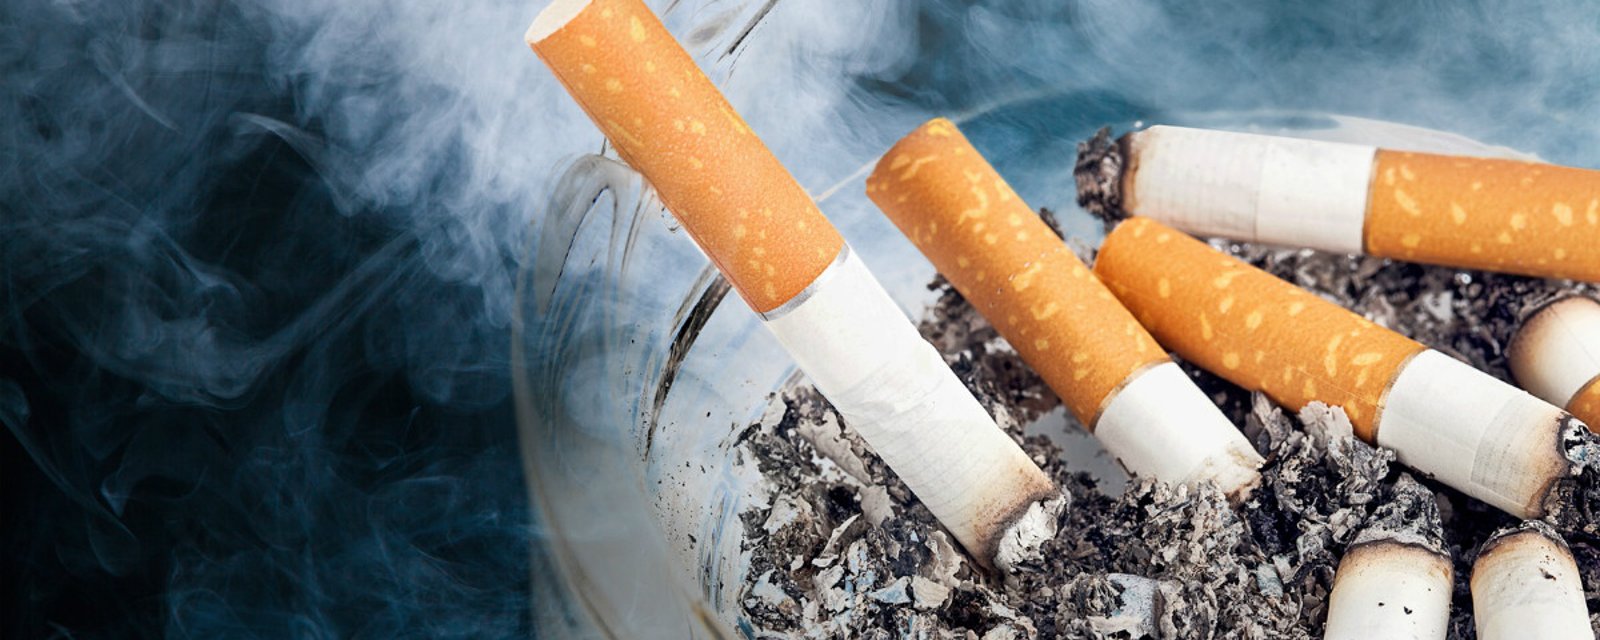 Voici comment vous débarrasser de l'odeur de cigarette